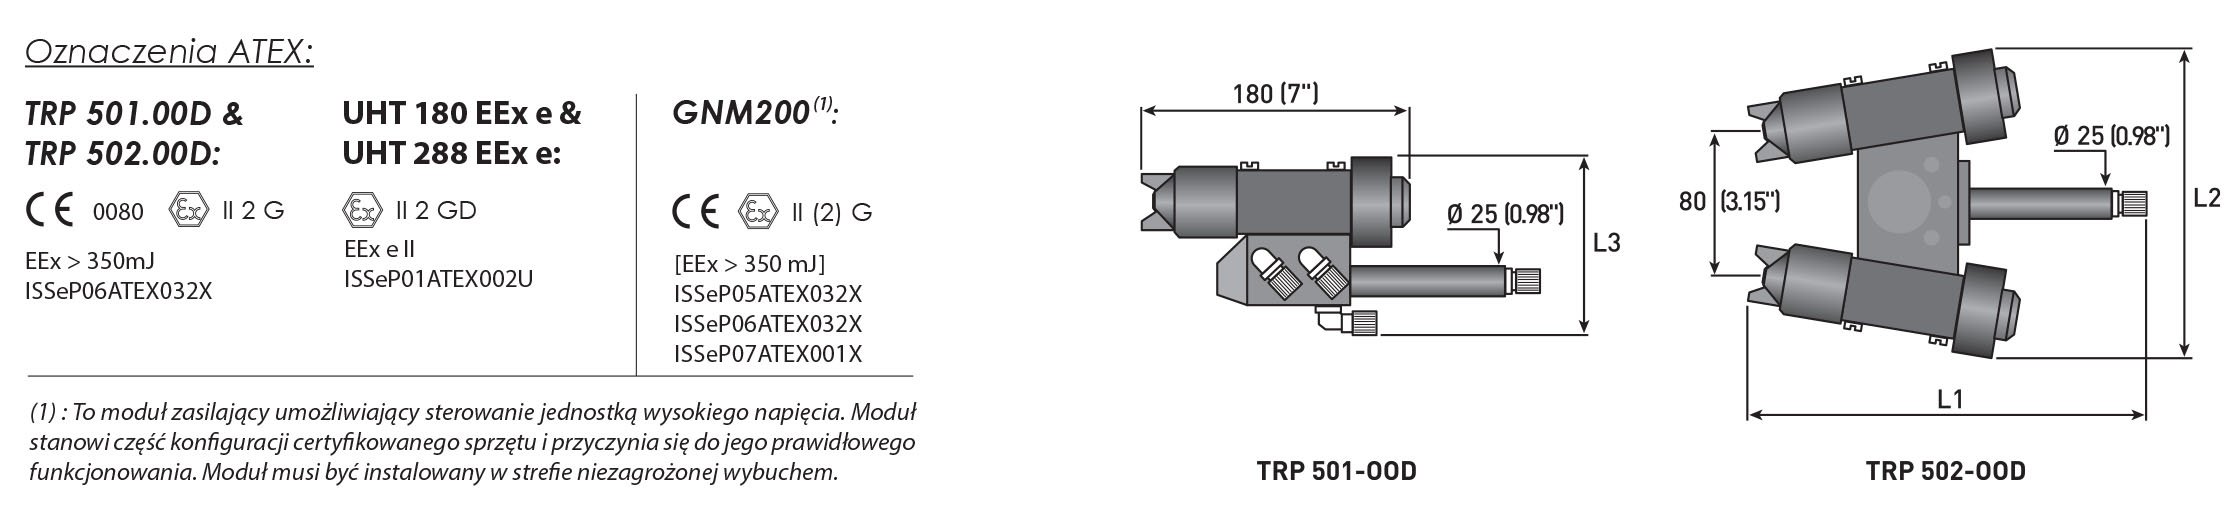 TRP SAMES automatyczny rozpylacz pneumatyczno-elektrostatyczny oznaczenia ATEX